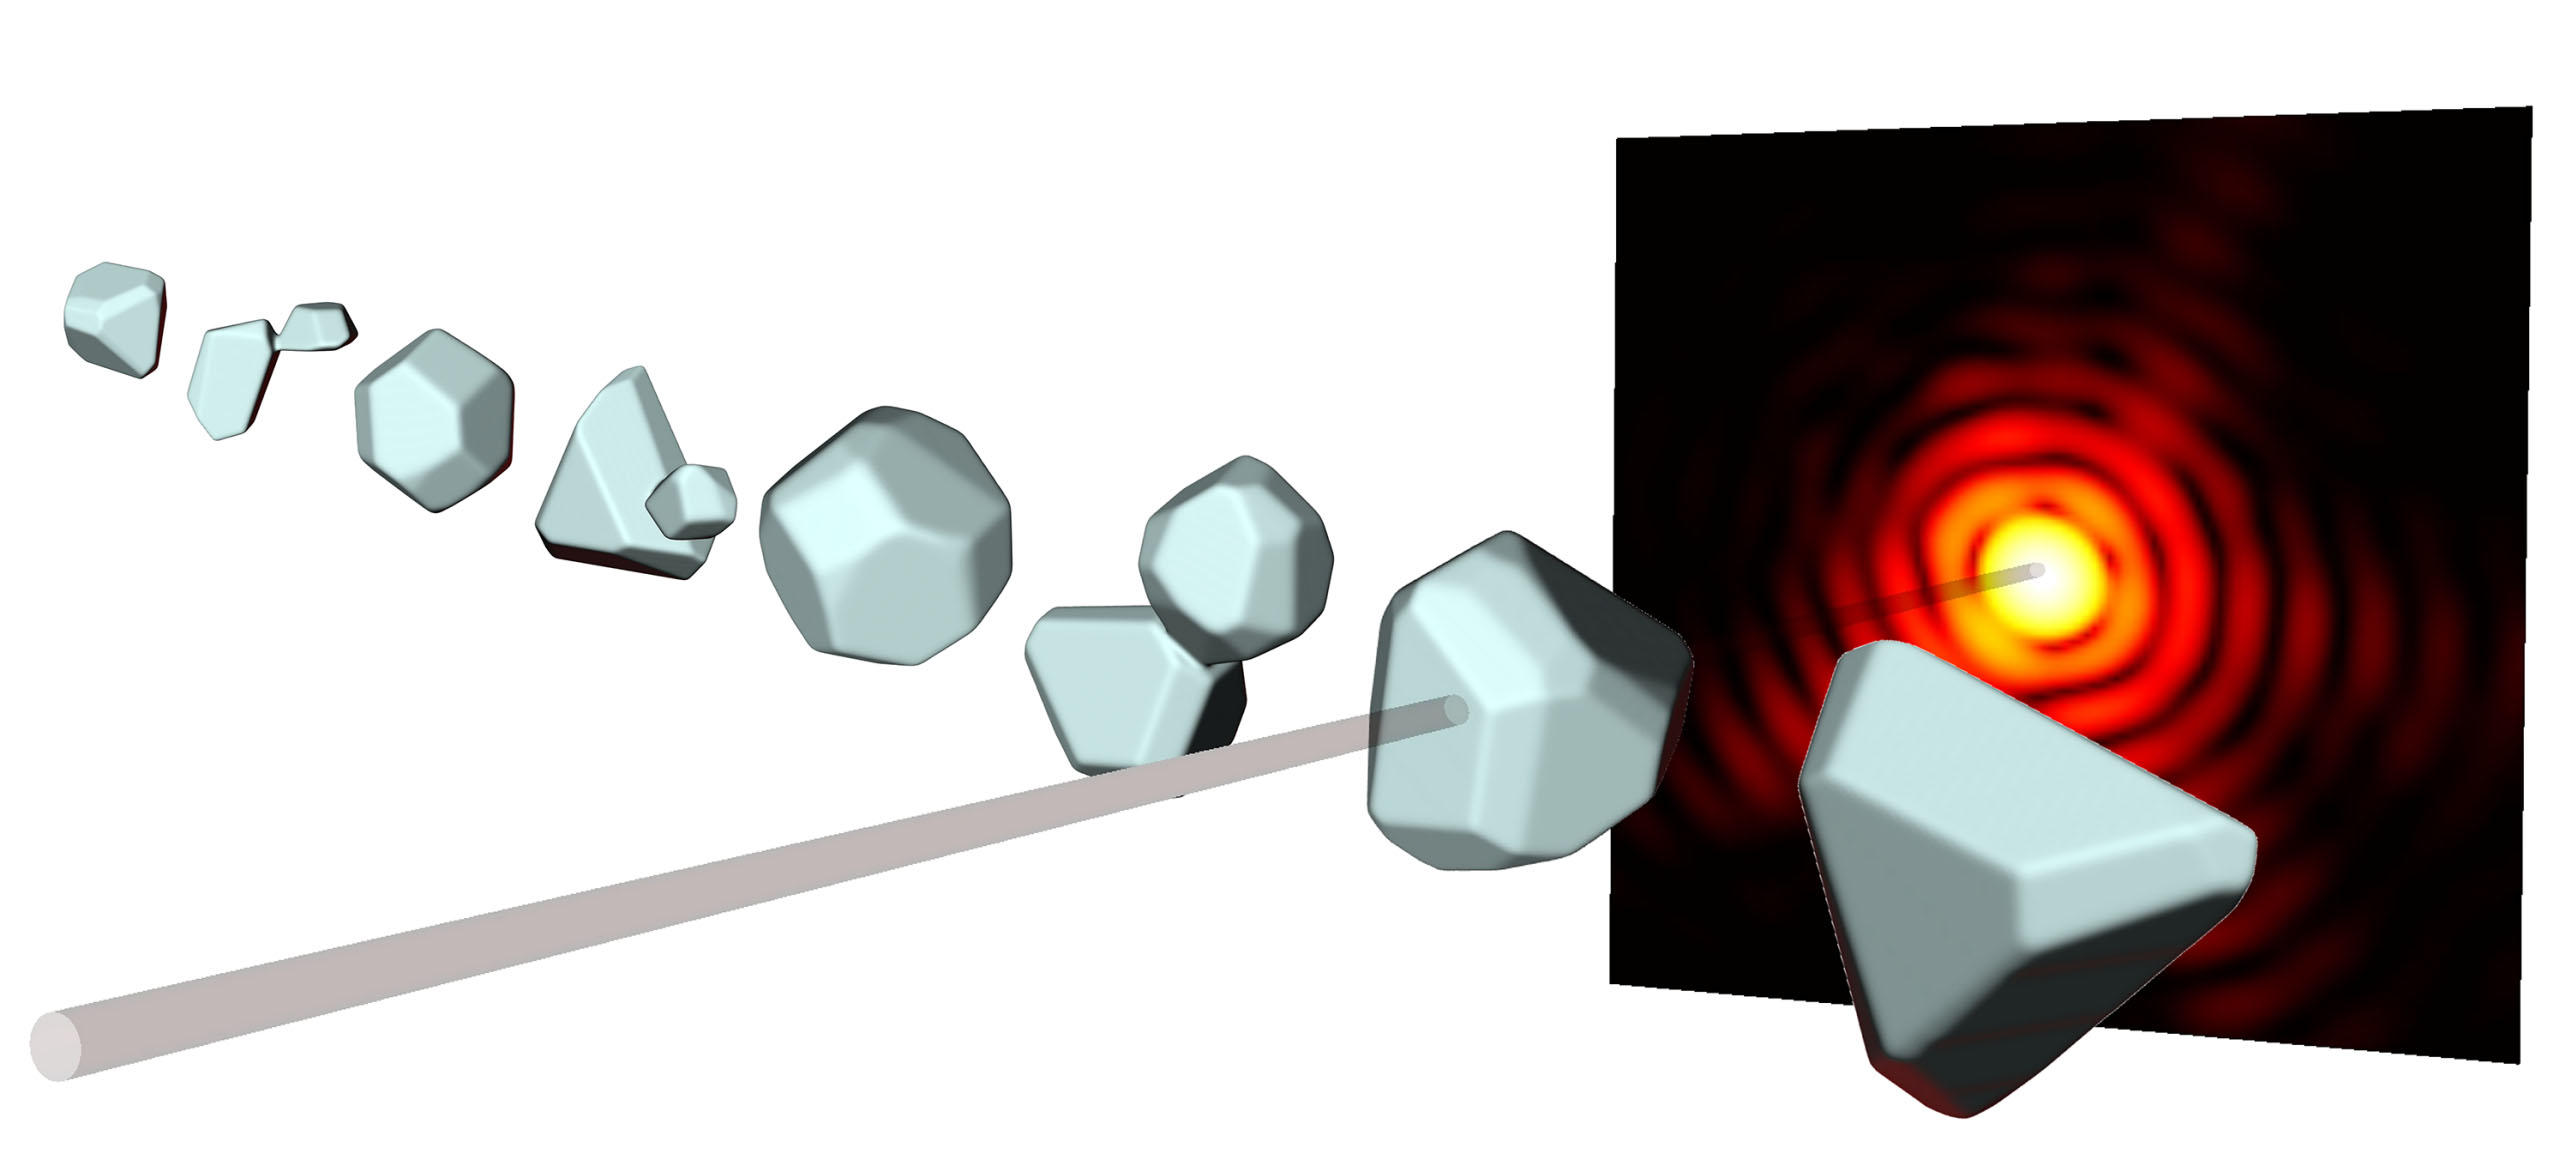 À partir des diagrammes de diffraction (rouge) des impulsions de rayons X (gris), avec lesquelles les nanoparticules sont bombardées, les chercheurs peuvent calculer des images tridimensionnelles